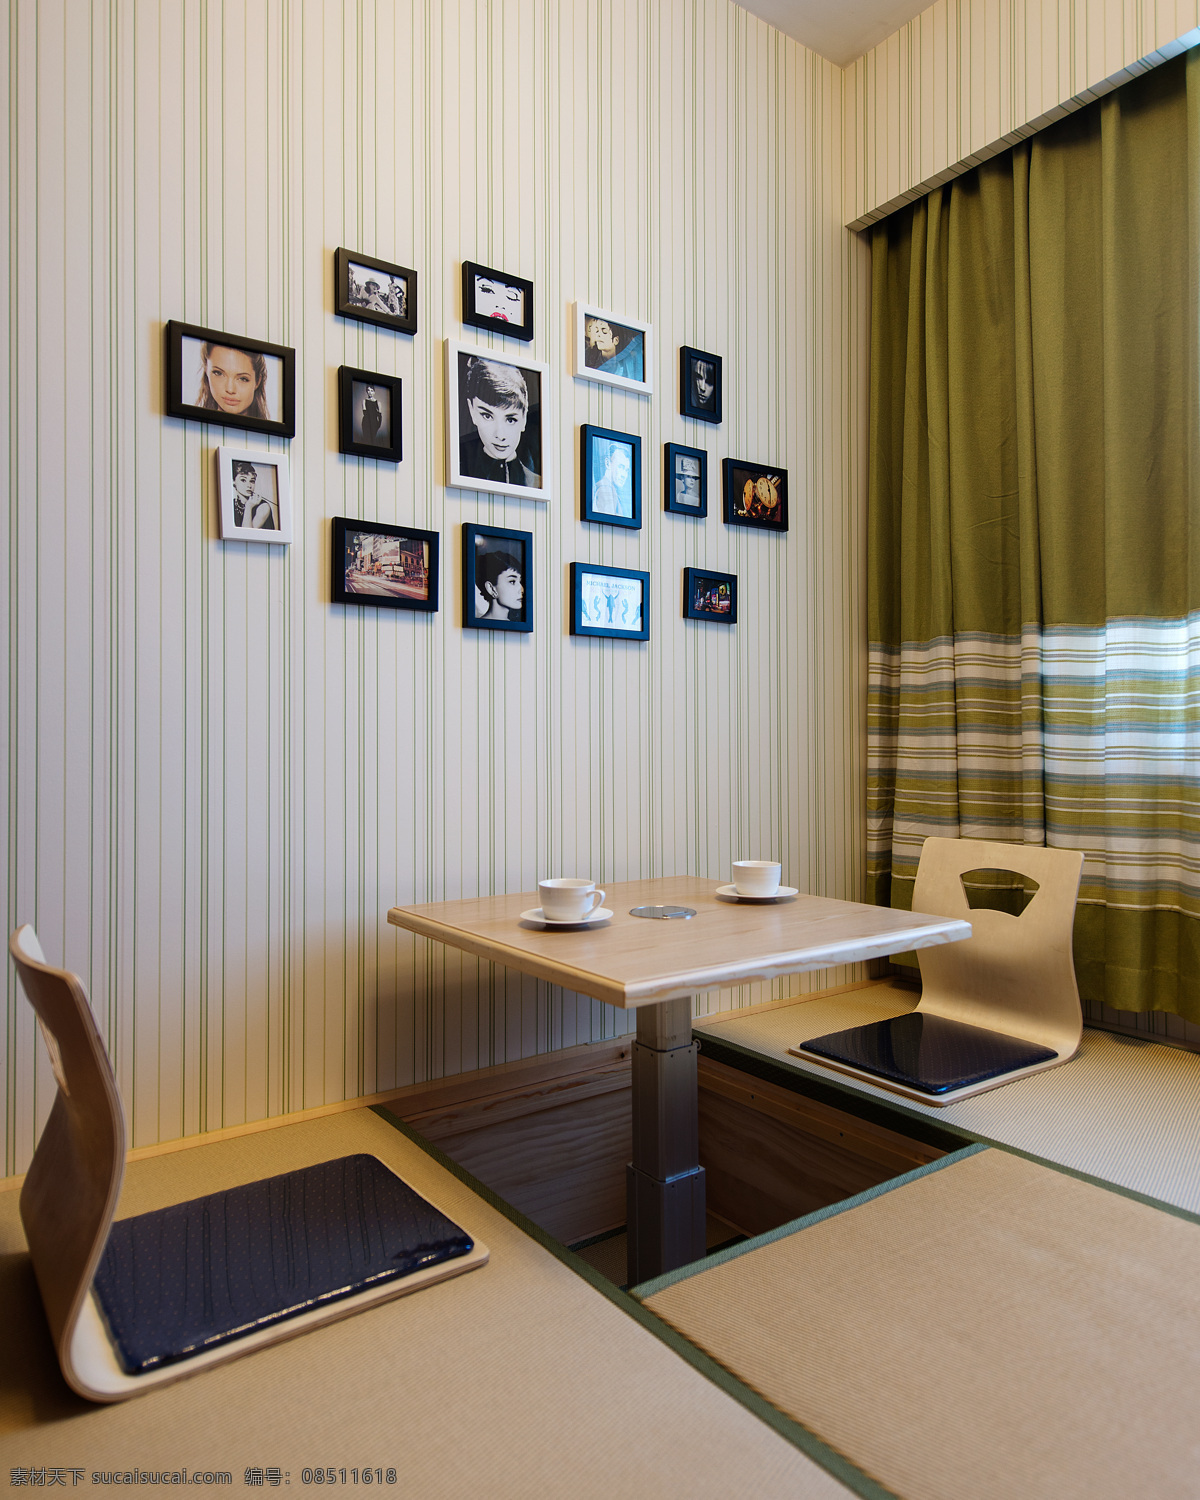 日式 创意 简约 风格 餐厅 餐桌 装修 效果图 简约风格 照片墙 格子窗帘 高清大图